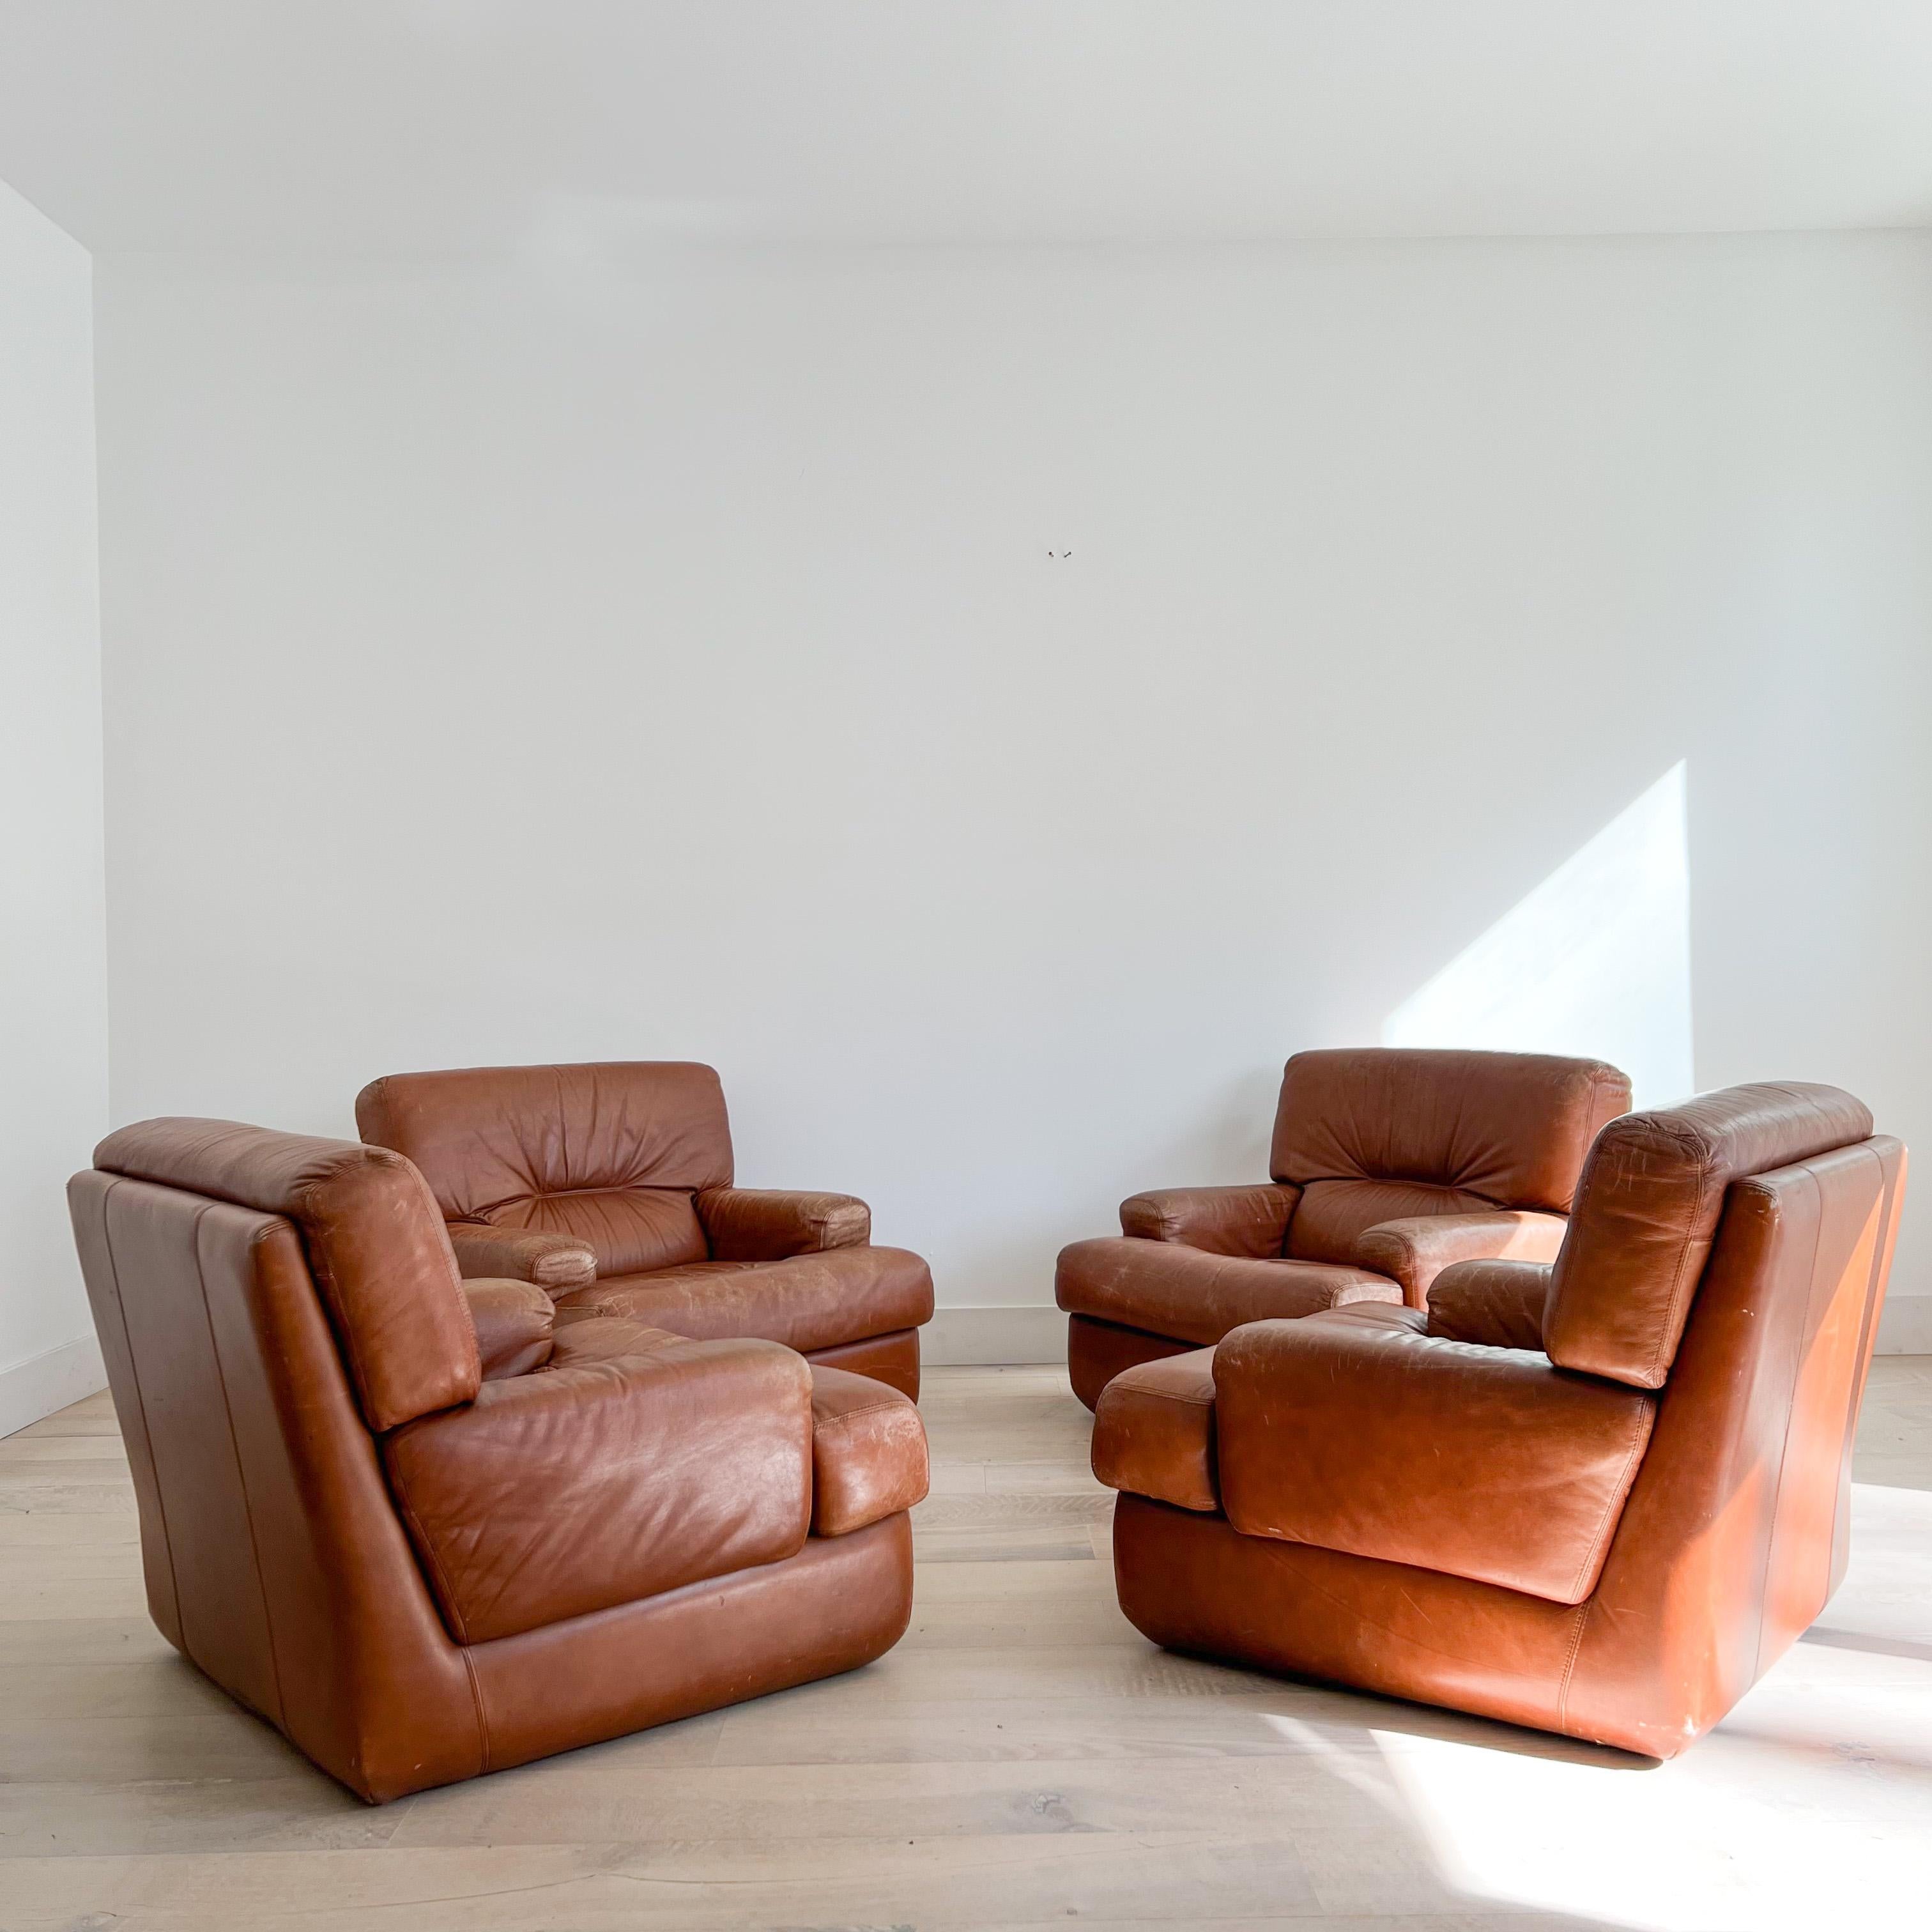 Ensemble de 4 chaises de salon vintage en cuir marron dans le style de Roche Bobois. Ces chaises sont parfaitement usées et bien assises ! Quelques éraflures/rayures/décolorations du cuir dues à l'usure due à l'âge.